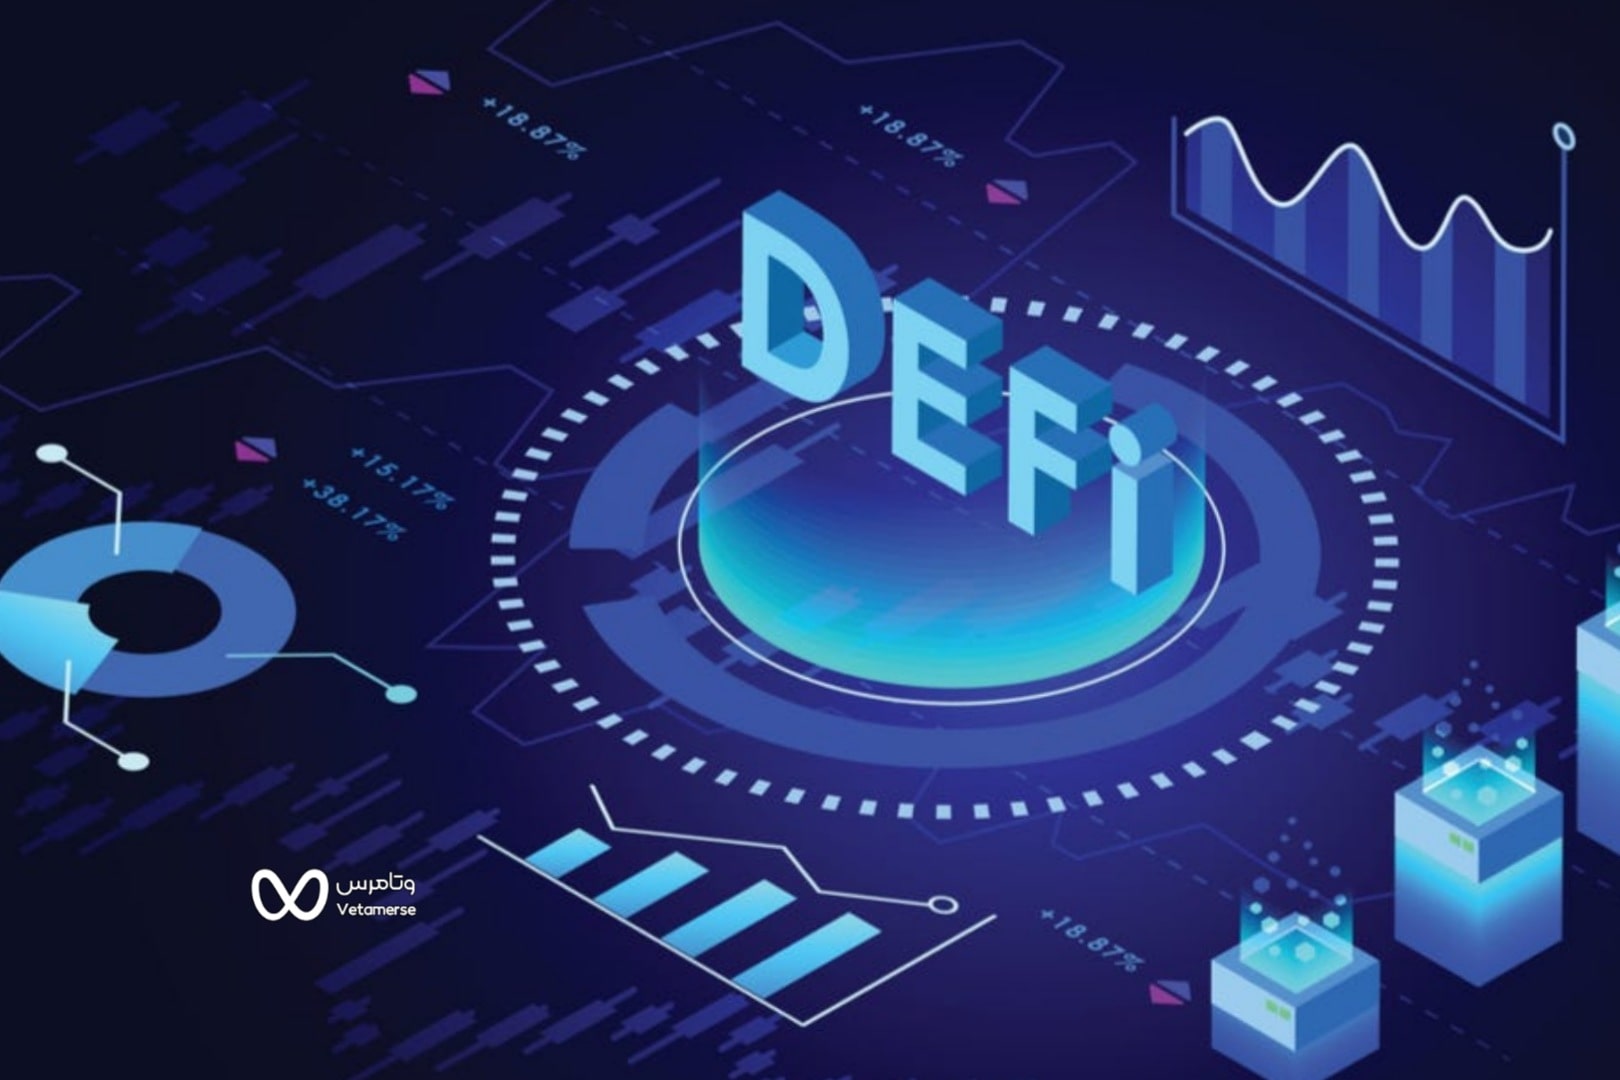 DeFi مخفف عبارت Decentralized Finance است که به معنای دارایی های دیجیتال غیرمتمرکز، پروتکل ها، قراردادهای هوشمند و نرم افزار مبتنی بر پلت فرم بلاک چین است